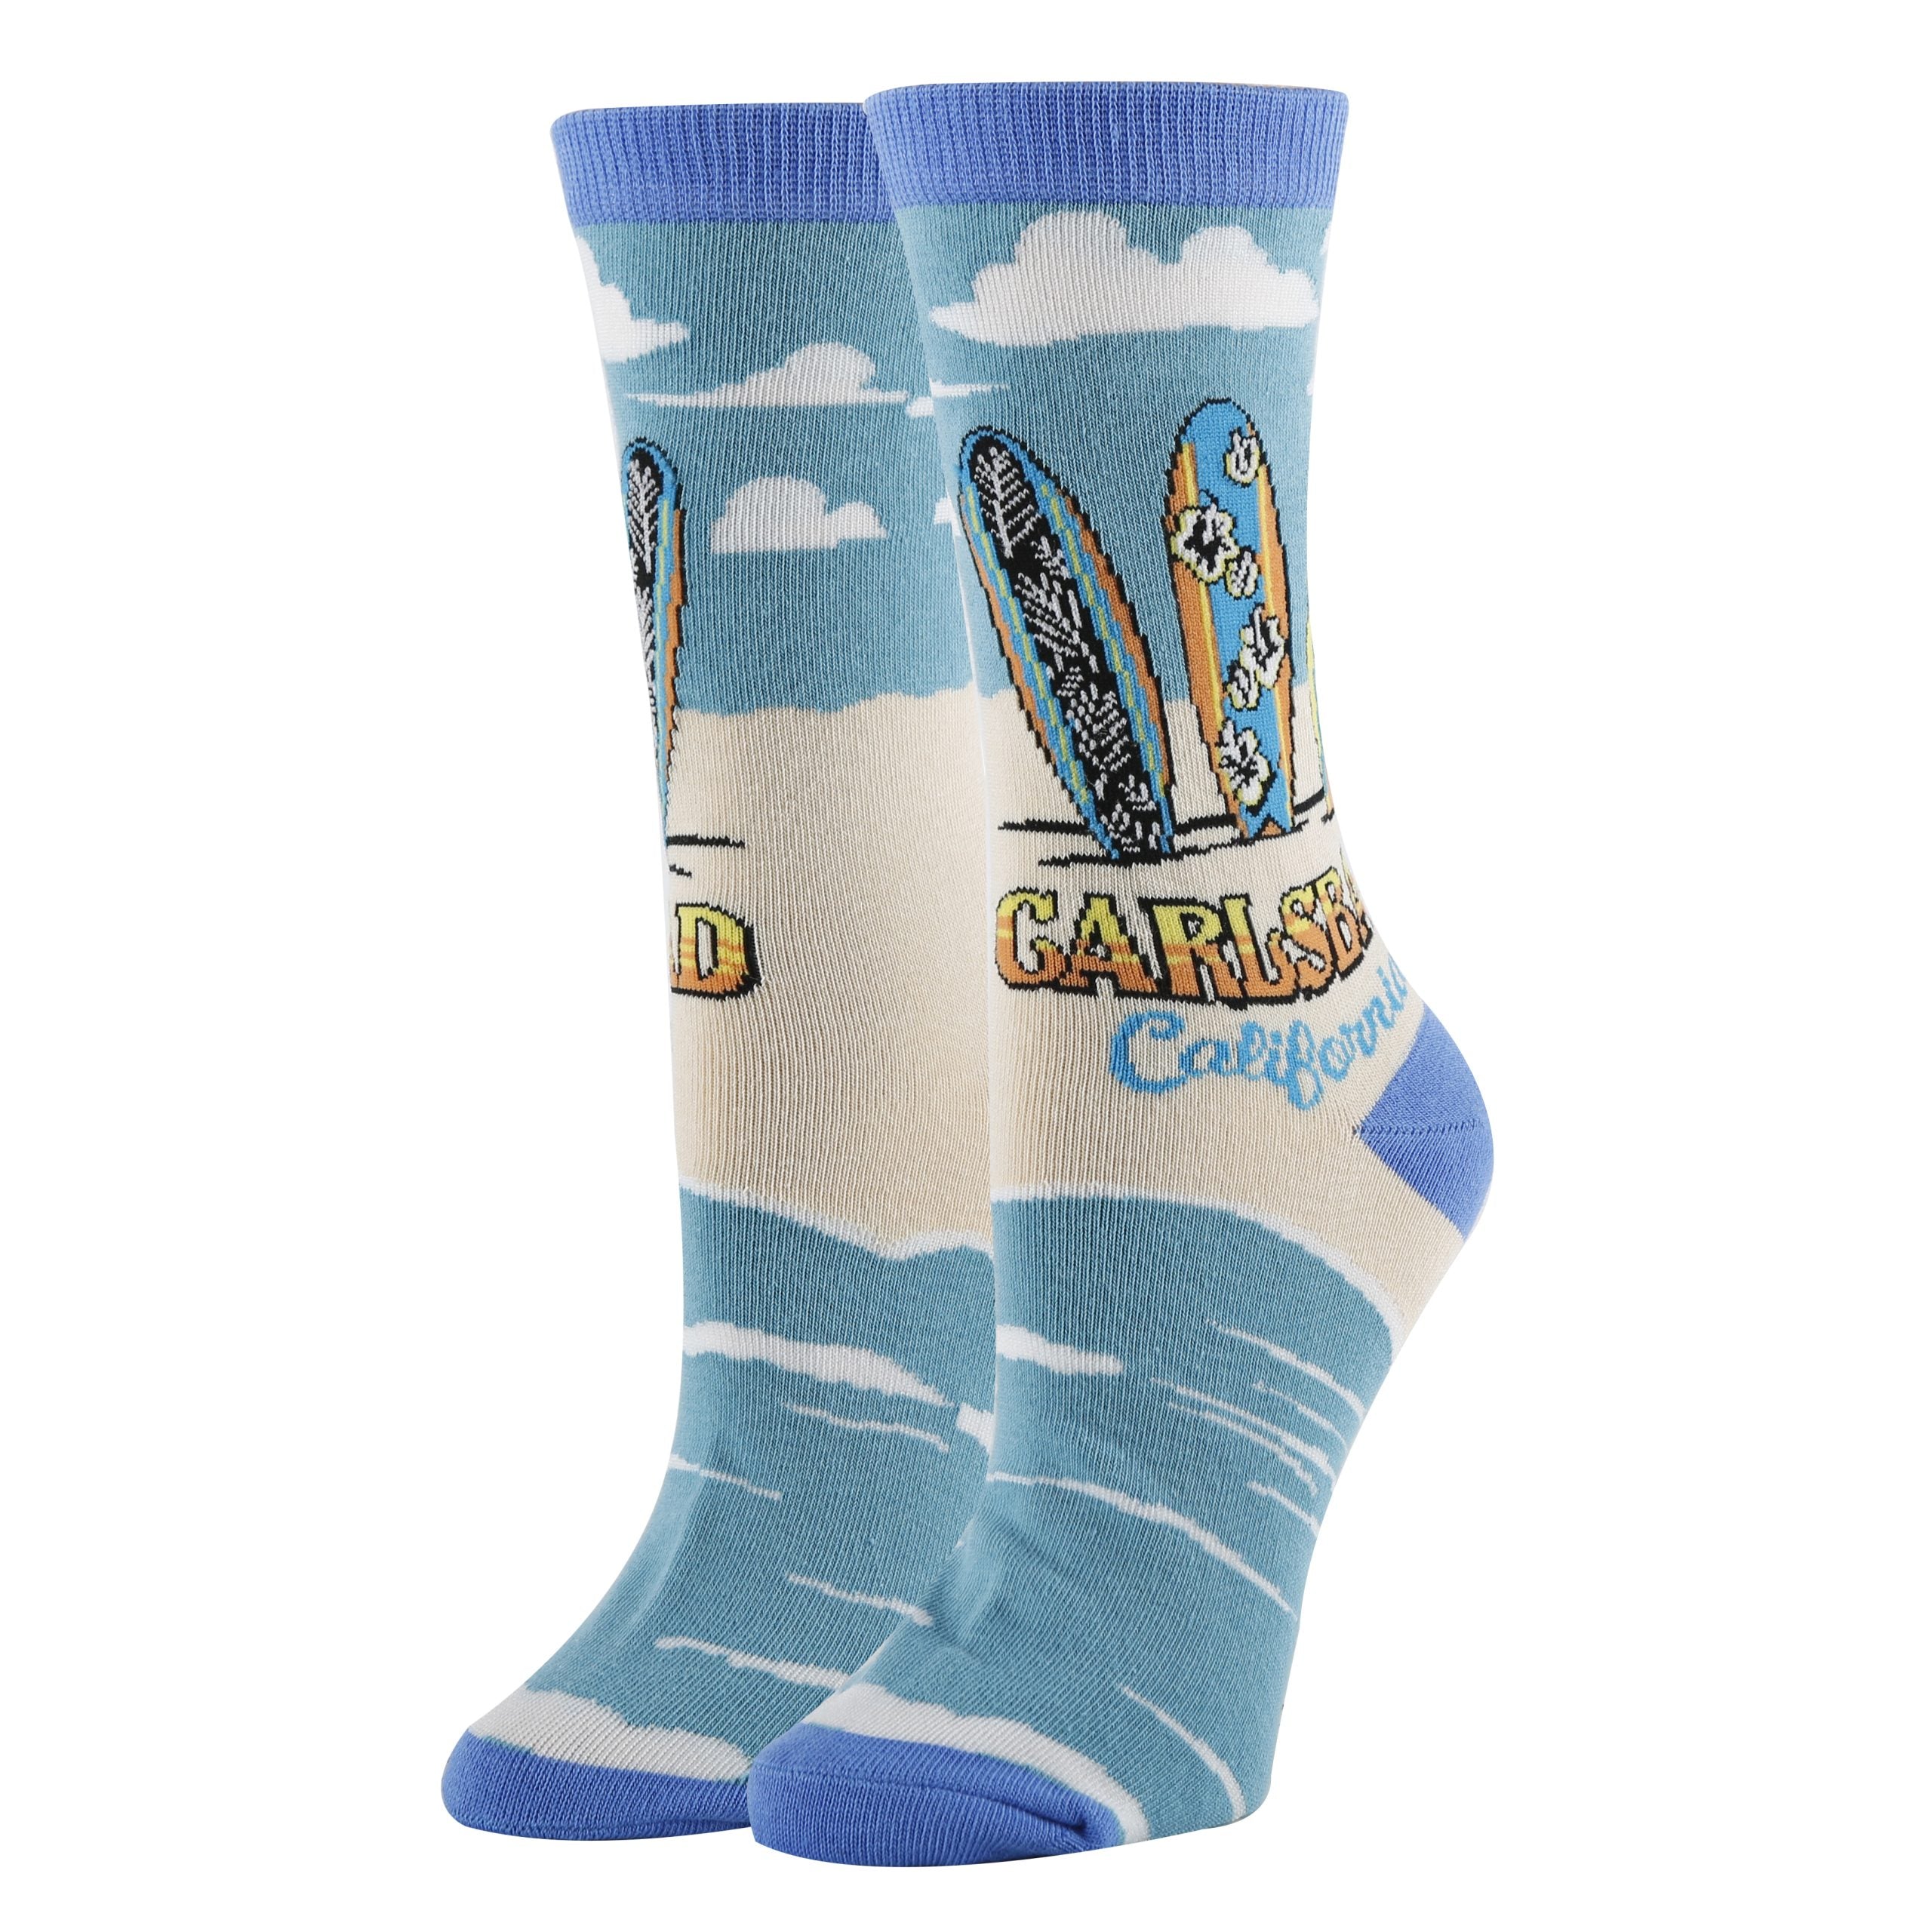 Calrsbad Socks | Funny Crew Socks for Women